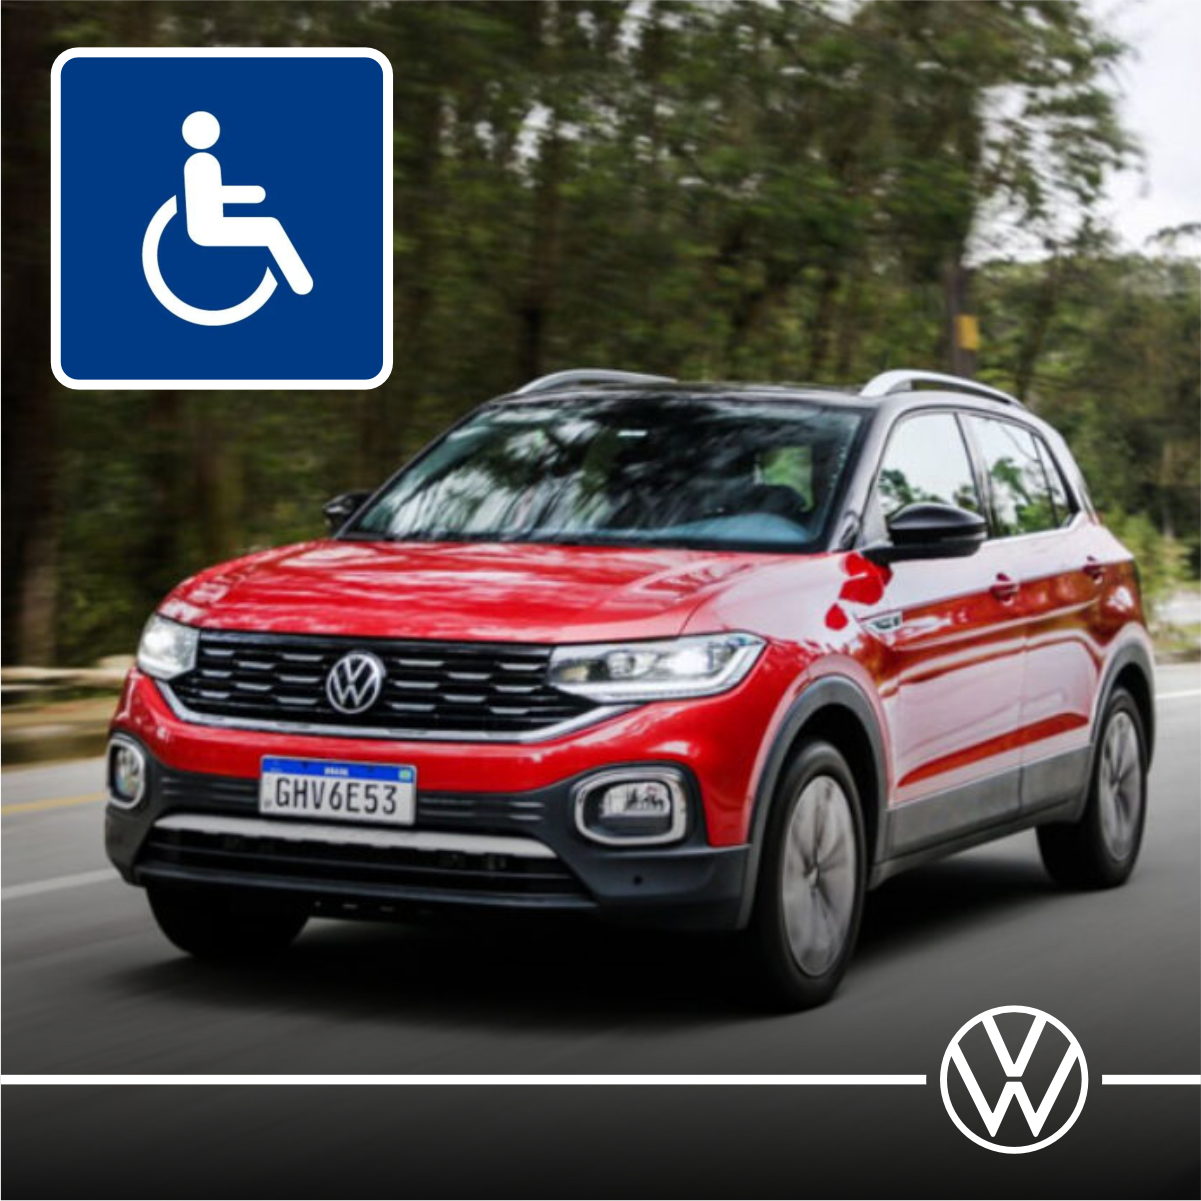 Um Volkswagen vermelho com uma placa de deficiência na lateral